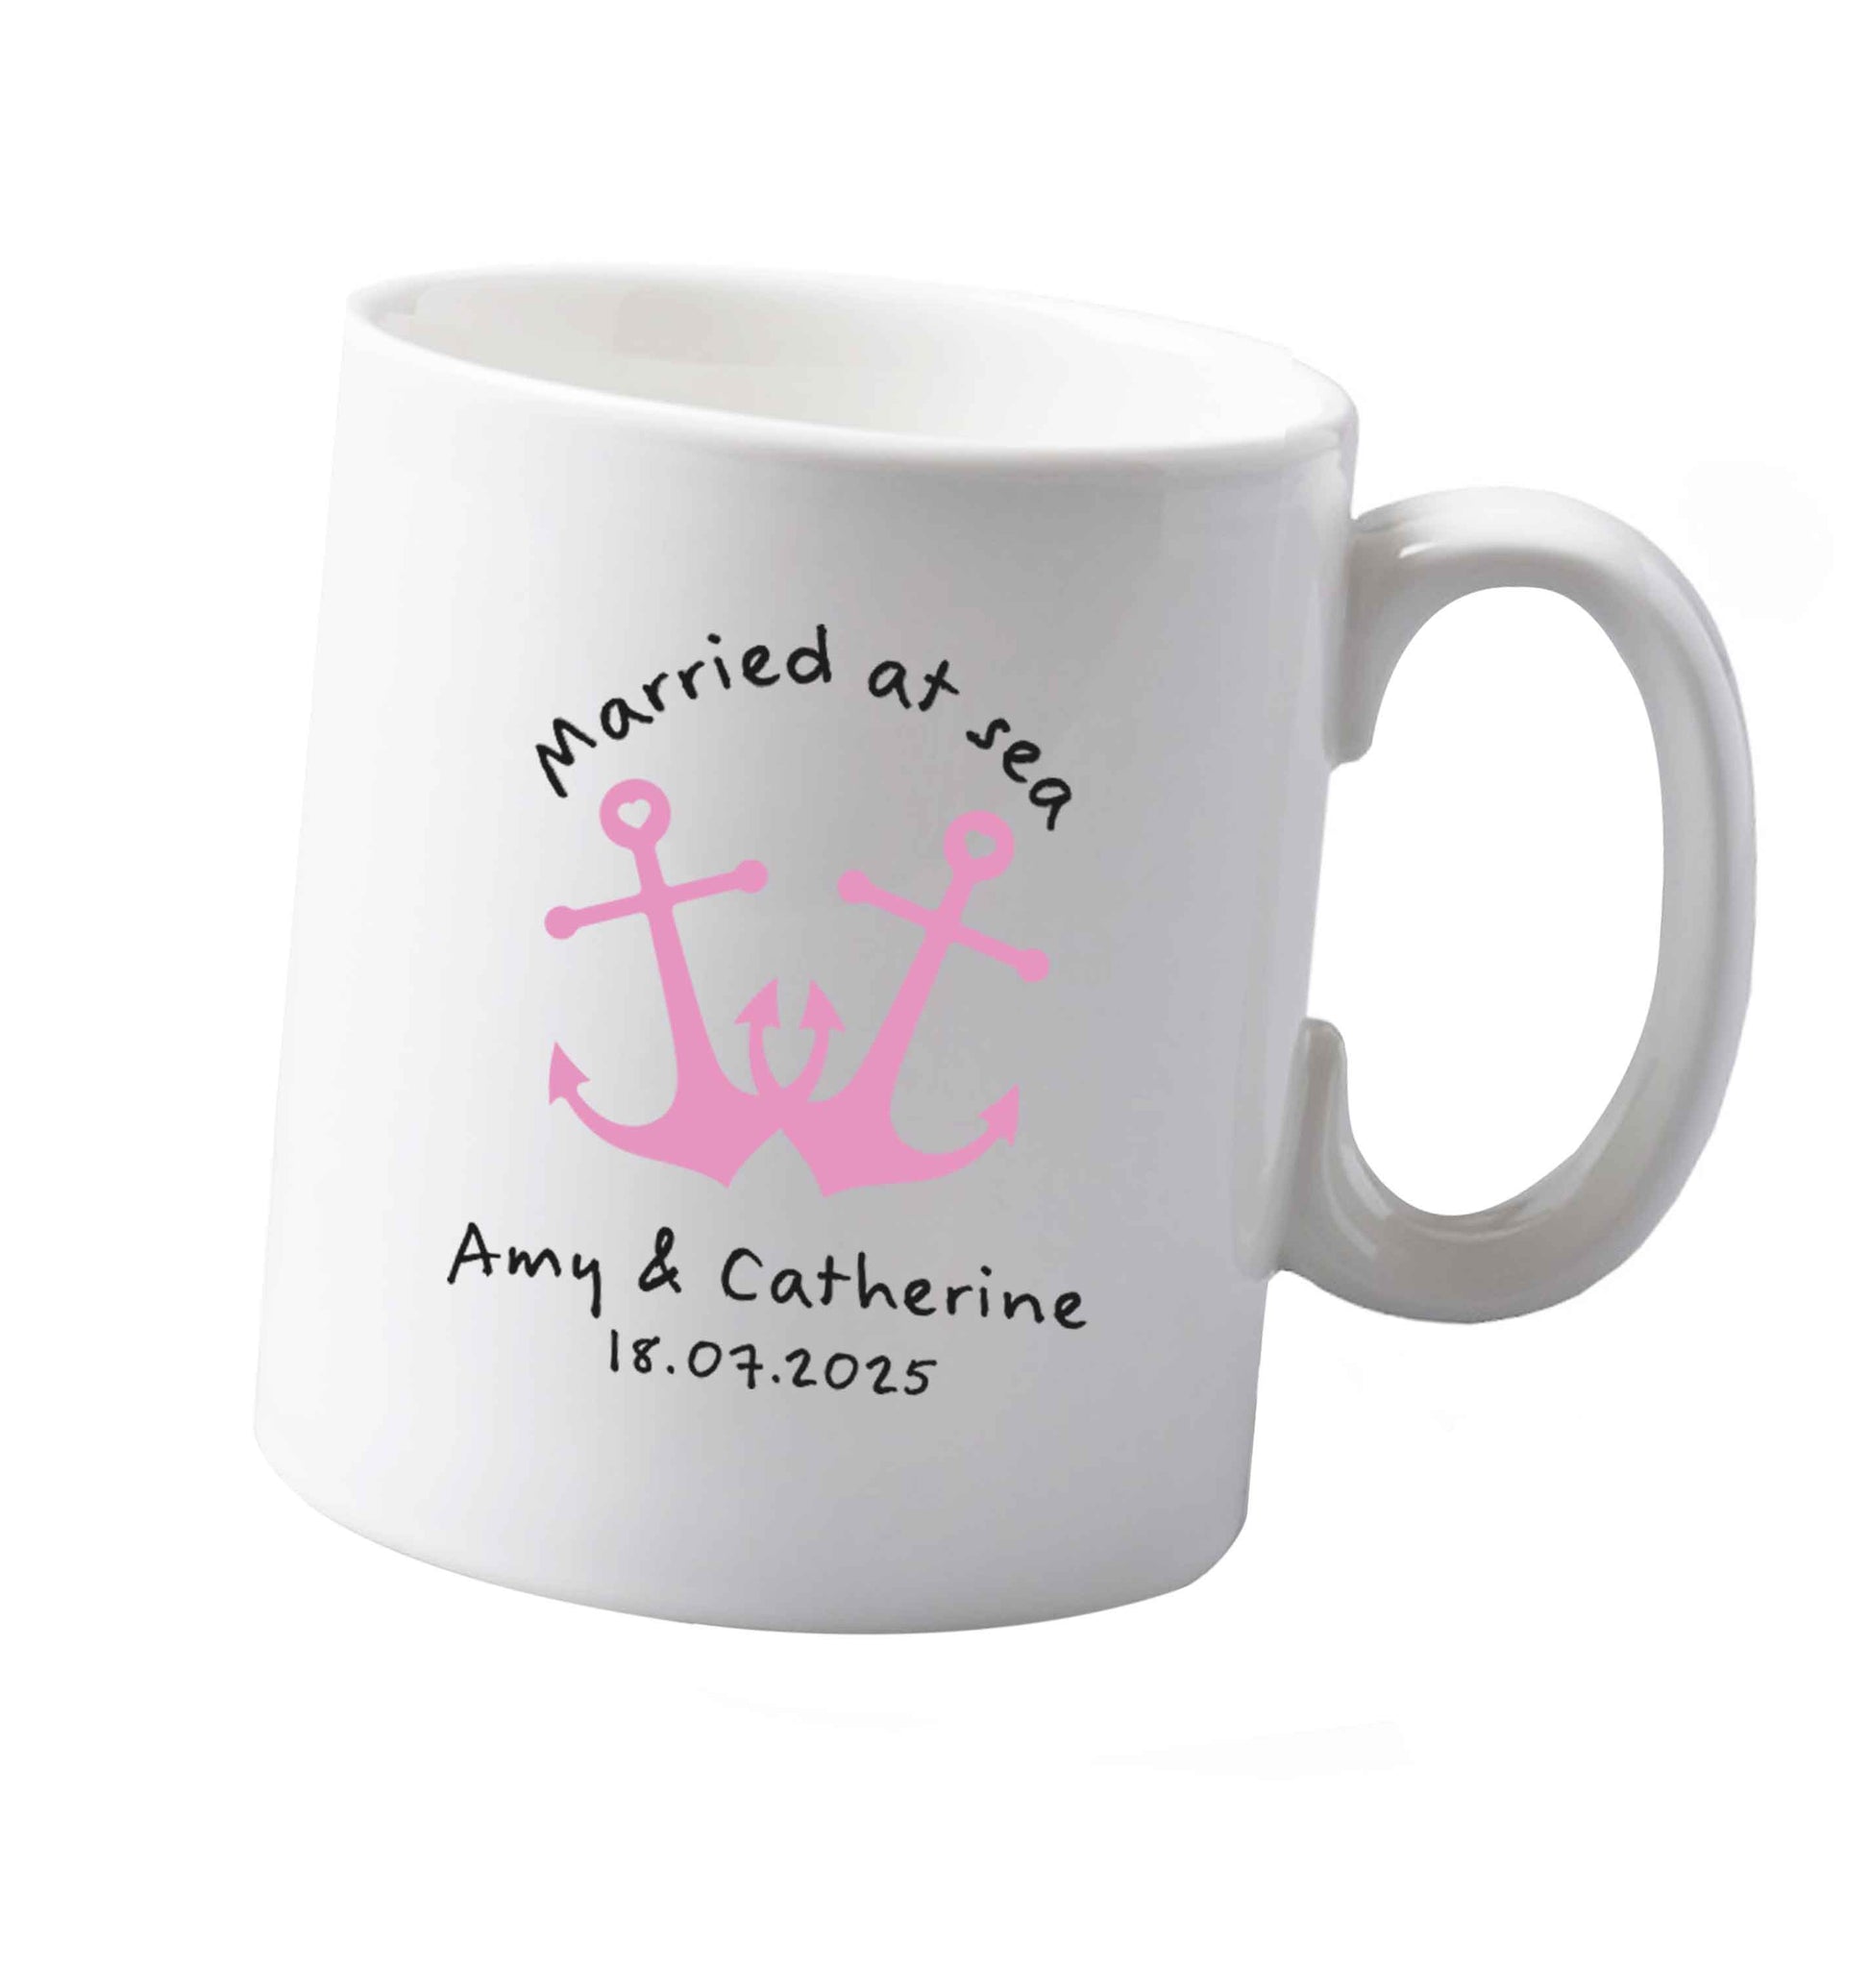 10 oz Married at sea pink anchors ceramic mug both sides